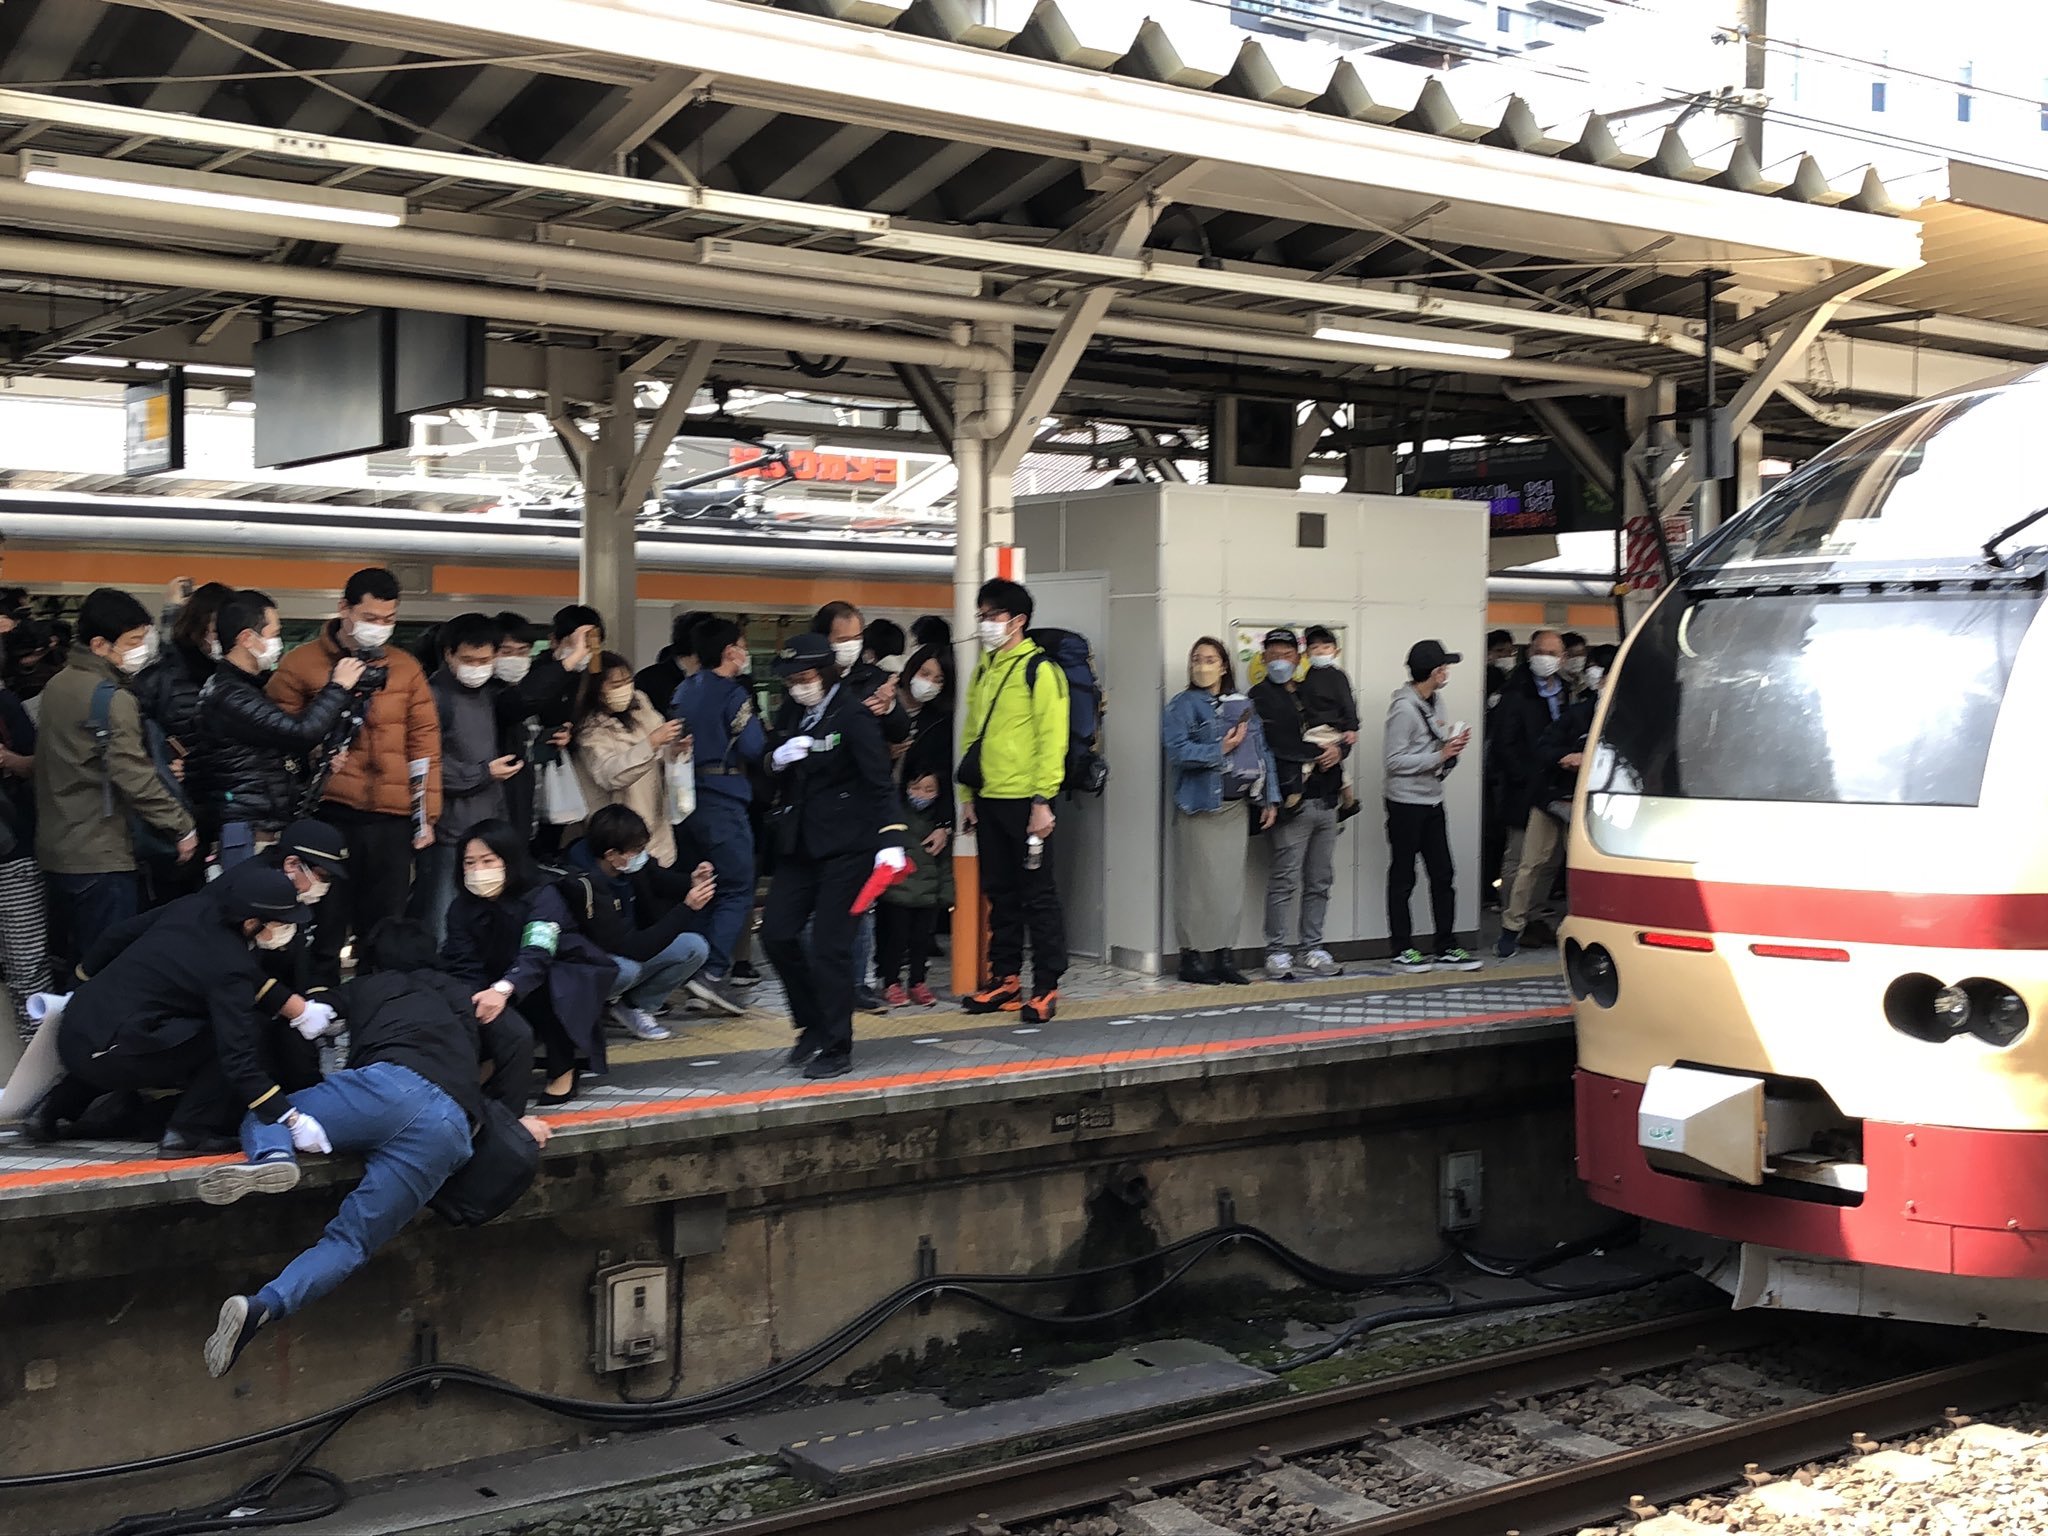 【悪質】八王子駅乗客落下事故 実は撮り鉄ネガティブキャンペーンのため報酬を払って自作自演をしていた